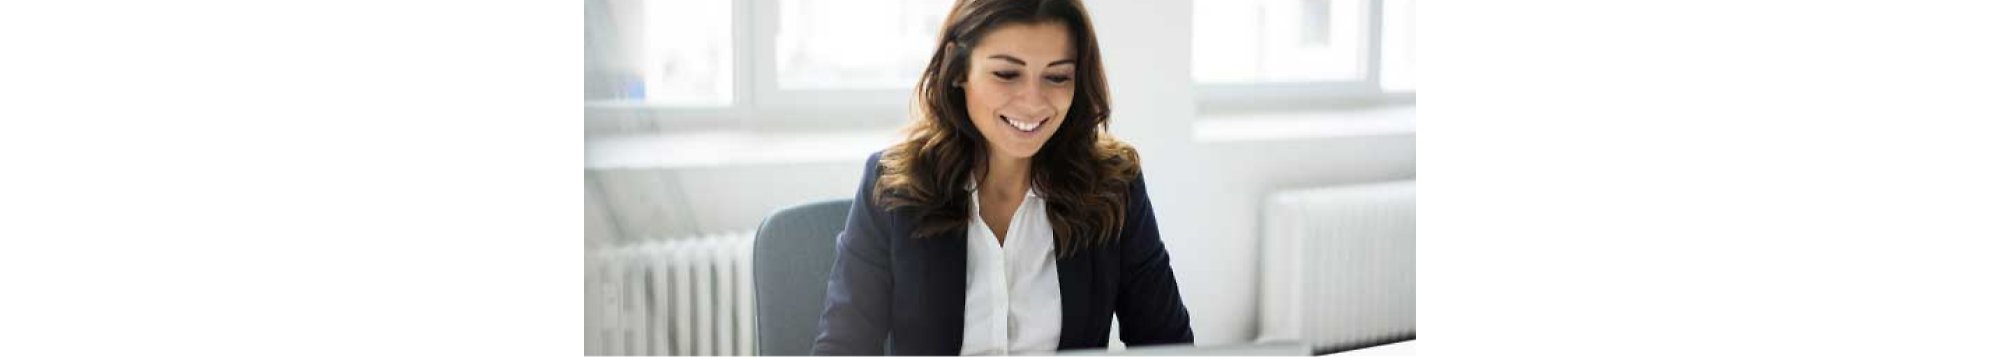 Uma mulher sorrindo sentada em um escritório